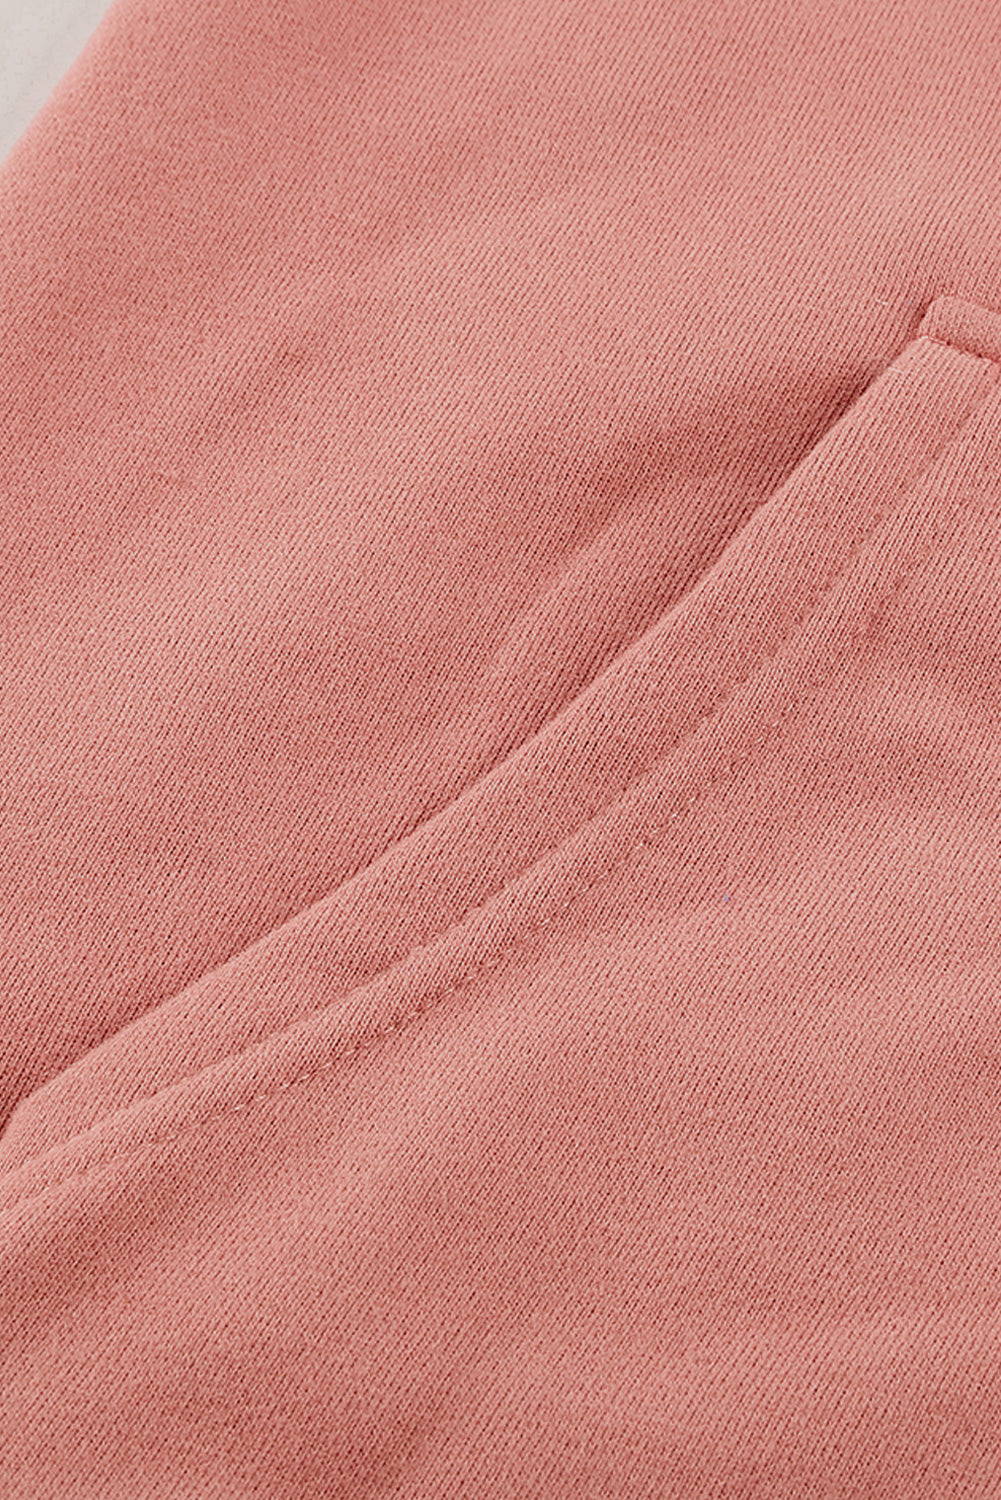 Veste à capuche zippée rose